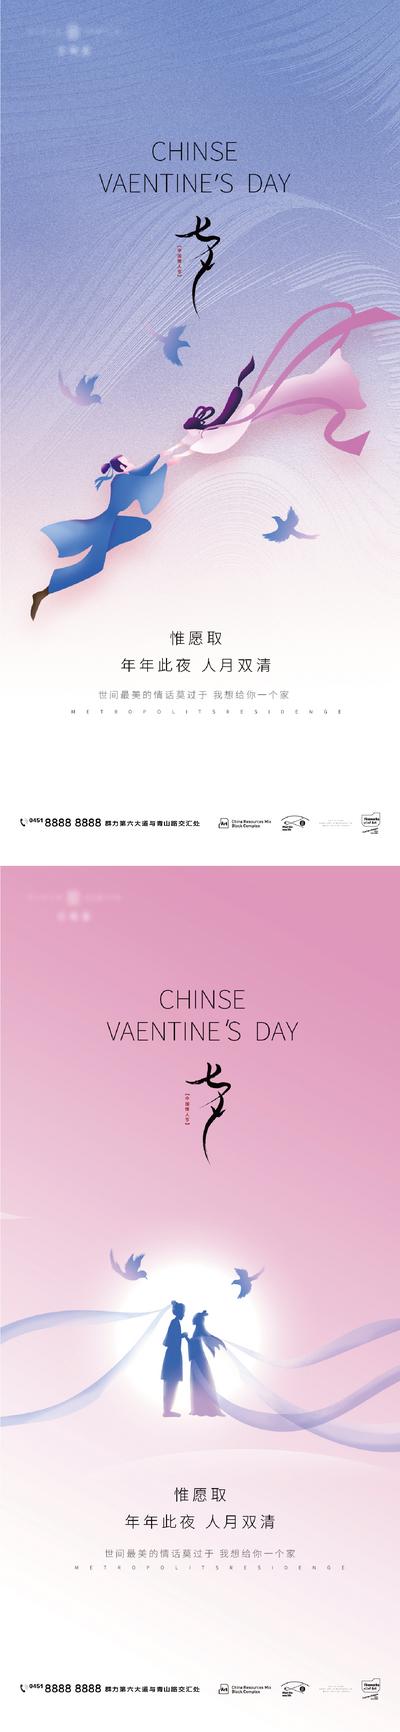 【南门网】海报 地产 中国传统节日 七夕 情侣 插画